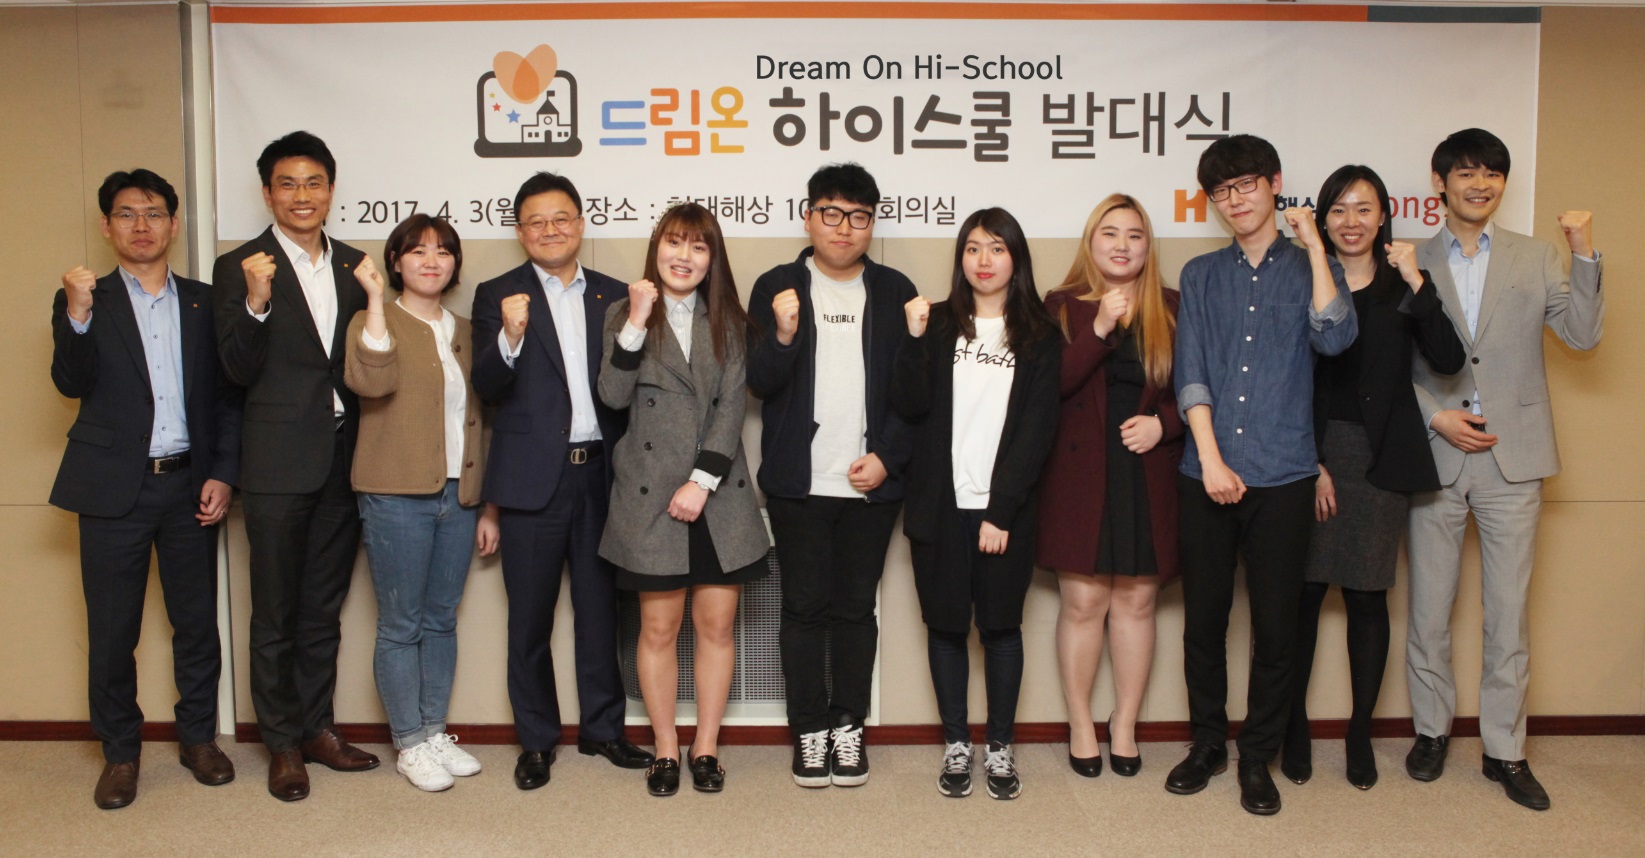 현대해상, 저소득층 청소년 공부 돕는 ‘드림온 하이스쿨’ 발대식 개최